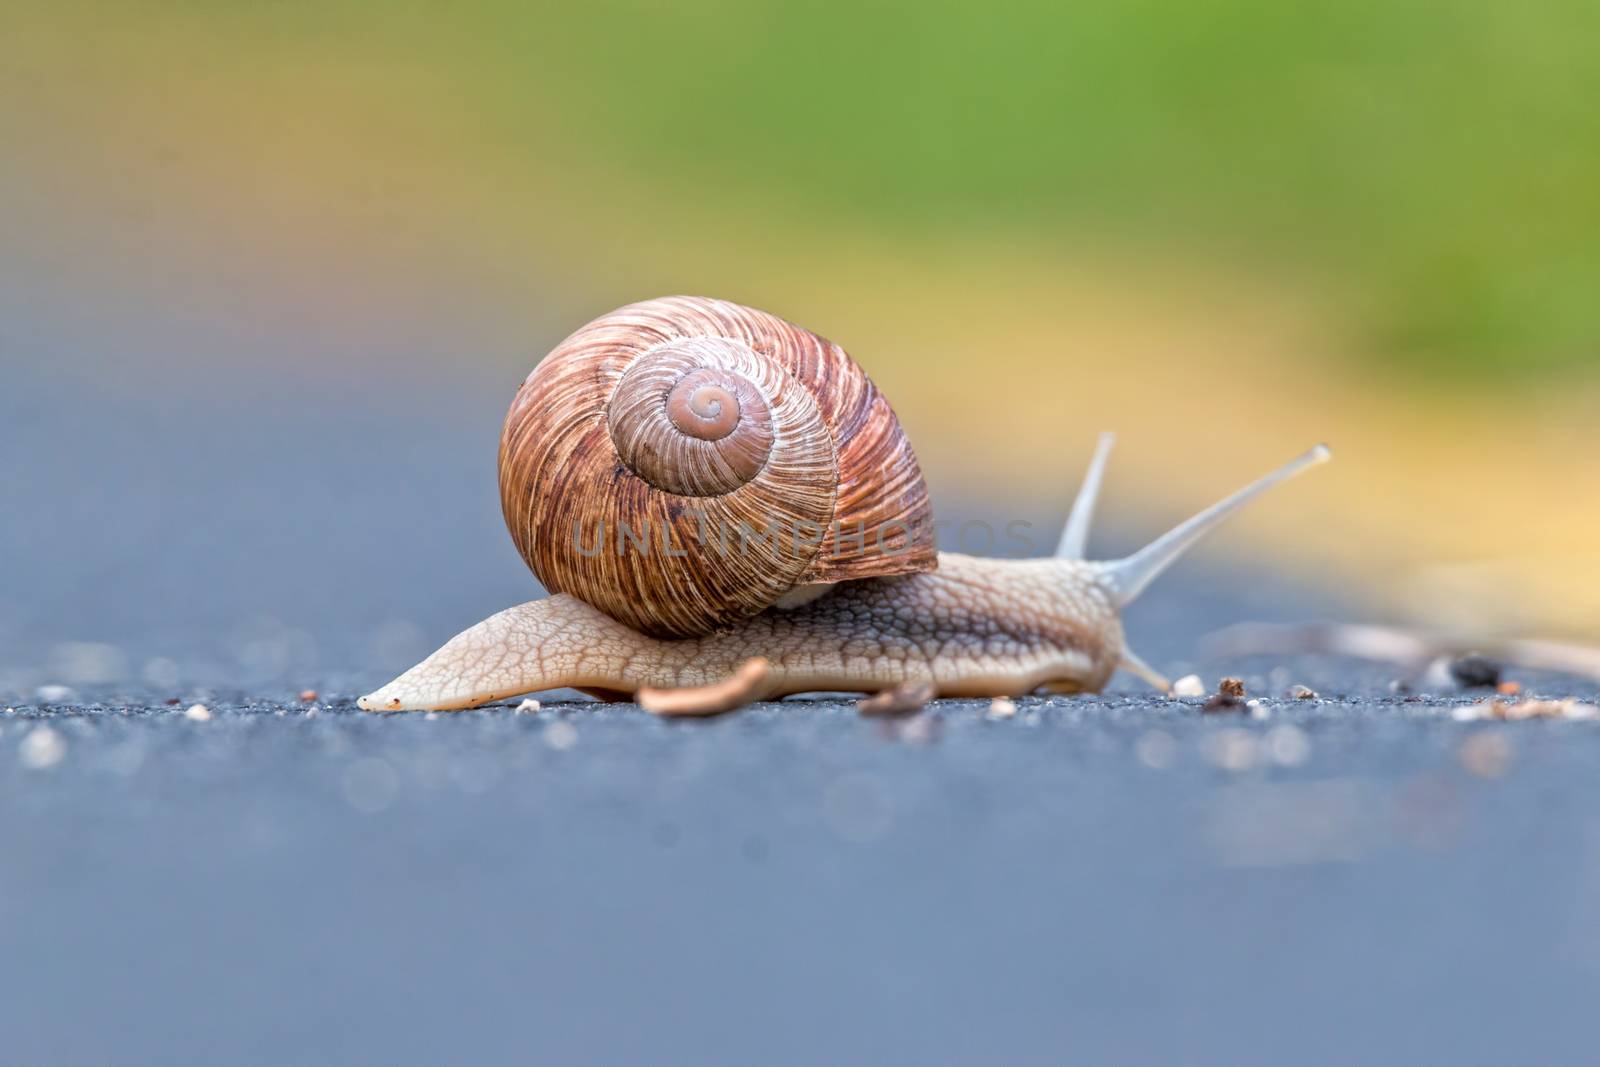 Burgundy snail (Helix pomatia) by Digoarpi